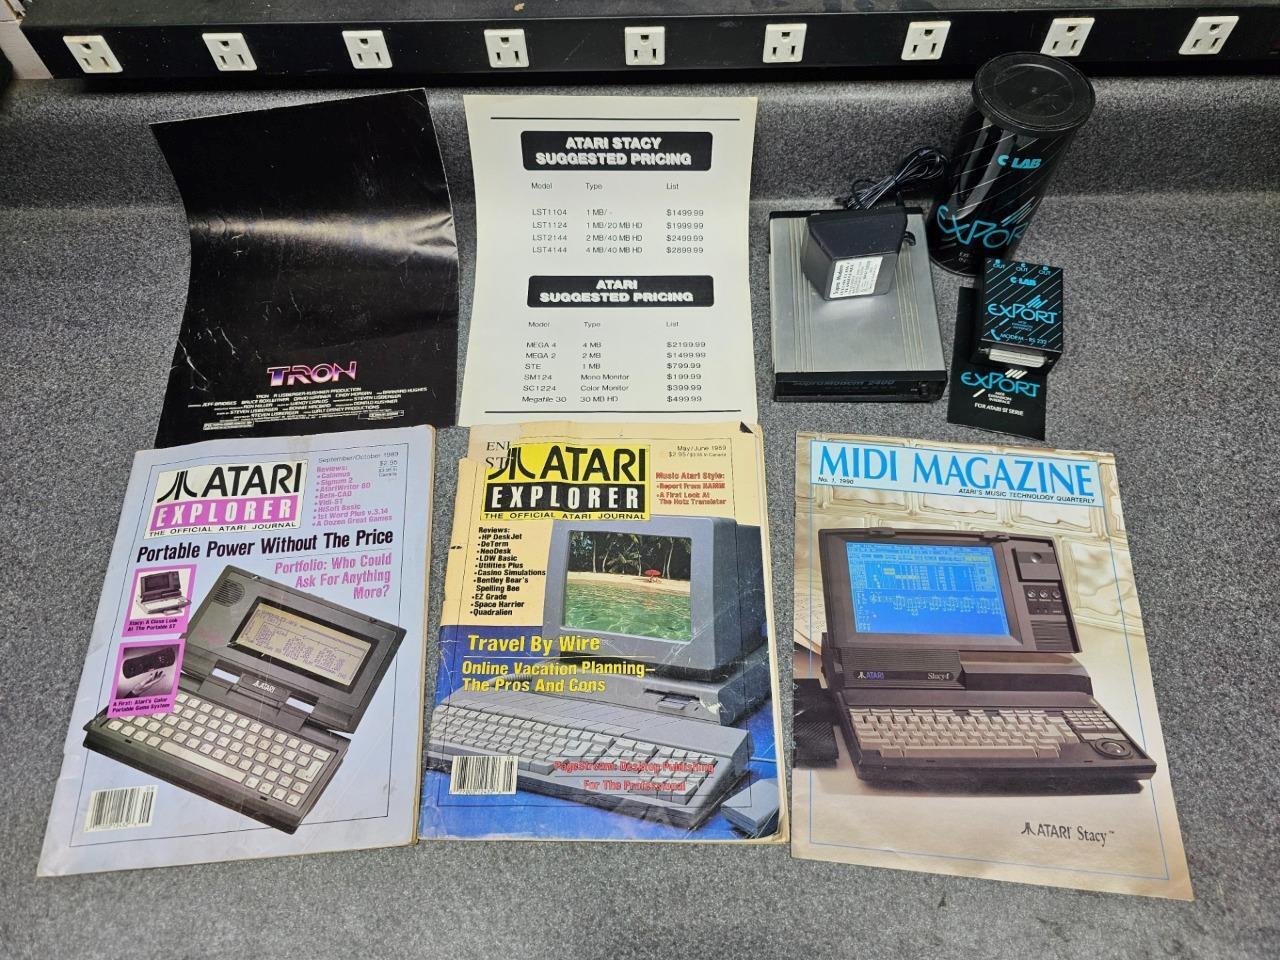 Atari Explorer and MIDI Magazines, Atari Accessories and a Tron Poster